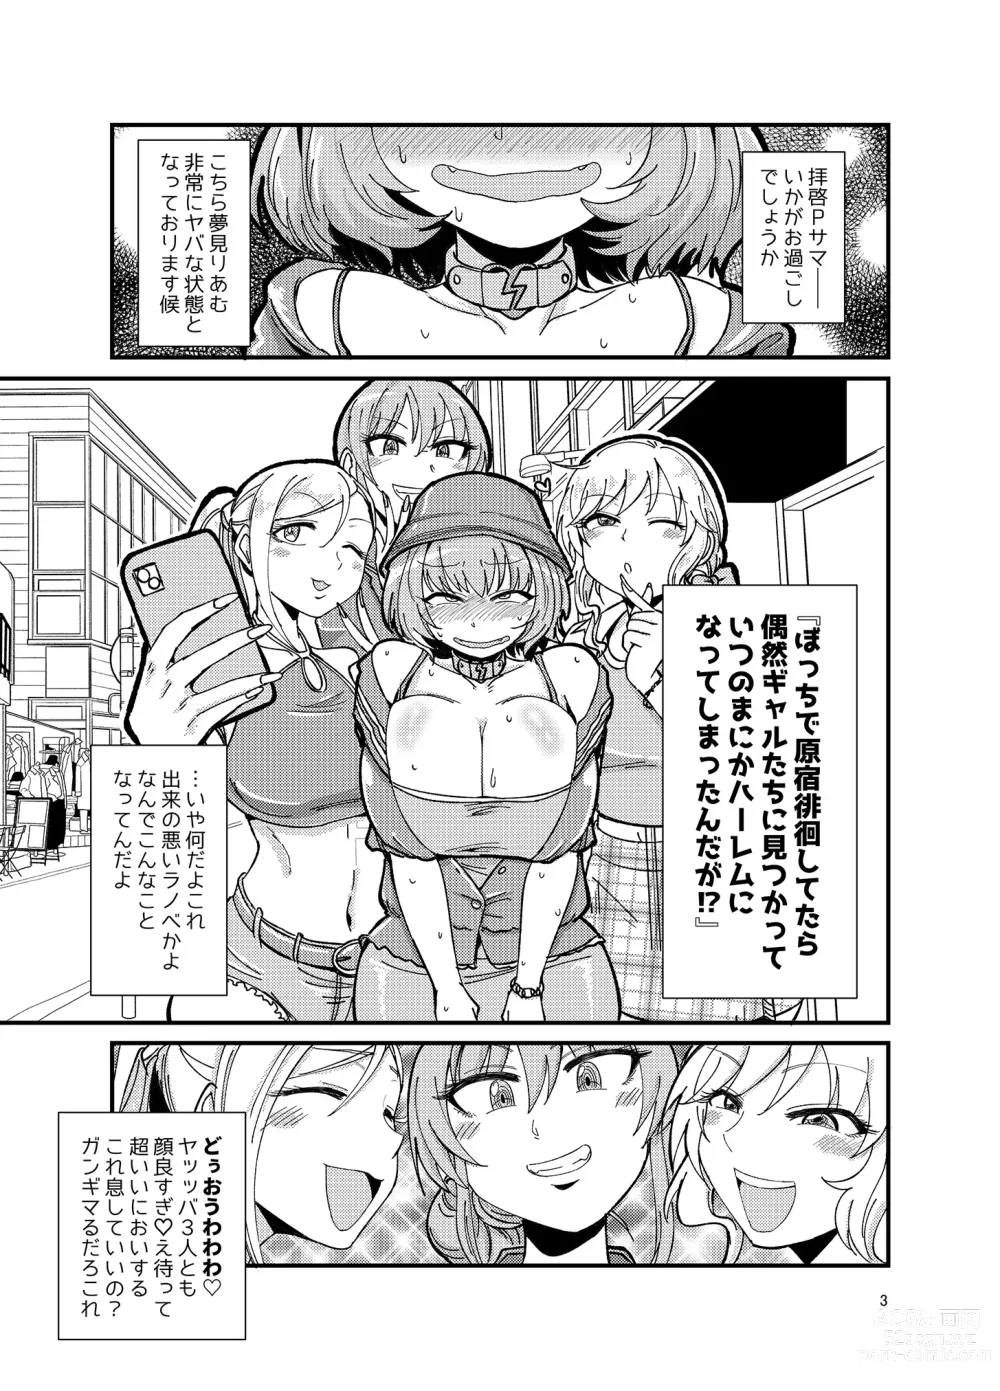 Page 3 of doujinshi Gal shika Tatan!